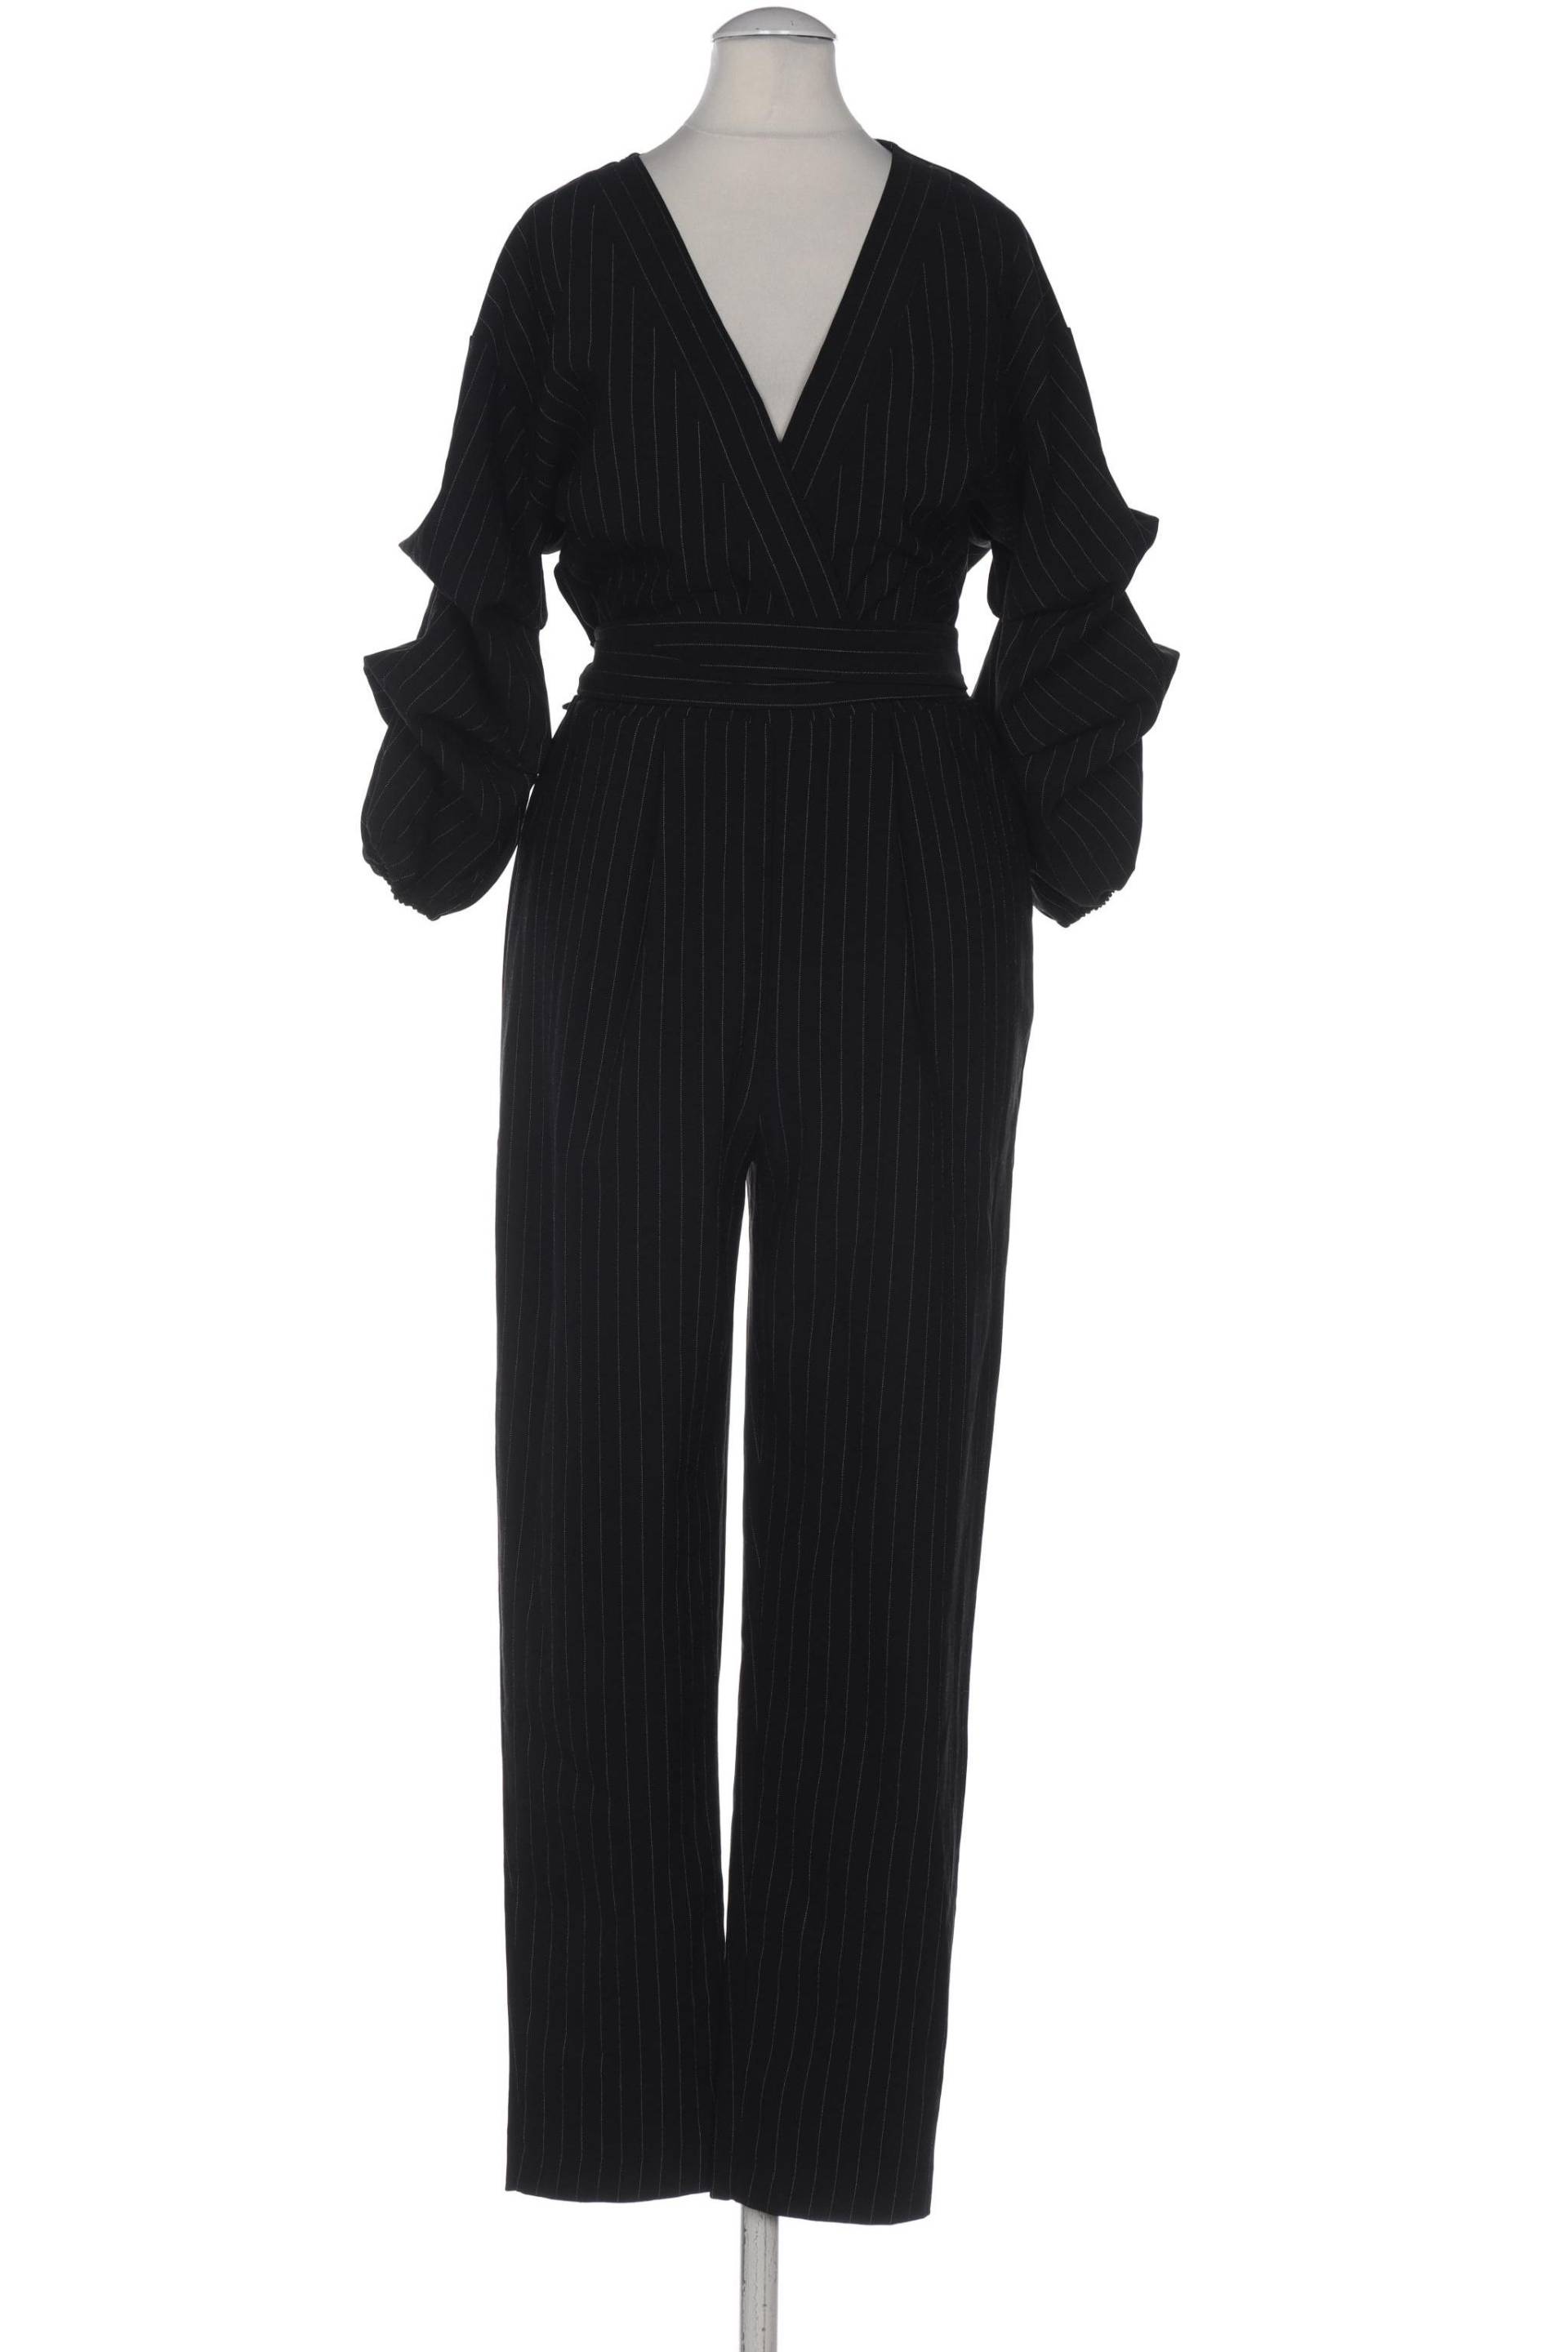 Miss Selfridge Damen Jumpsuit/Overall, schwarz, Gr. 34 von Miss Selfridge